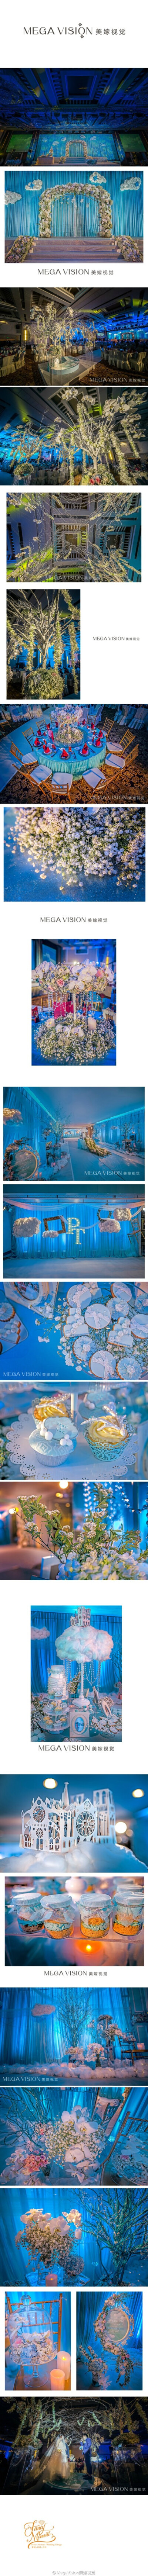 #美嫁出品# 《Blue Cloud微光森林》主题婚礼， 他们静静地呵护着一片蓝光森林， 置身于迷梦境地， 一切都是深邃而透澈， 纯净而无暇。 以蓝天白云主题打造的婚礼现场，用素雅的花材花艺装饰，全场渲染地清新又精致！…